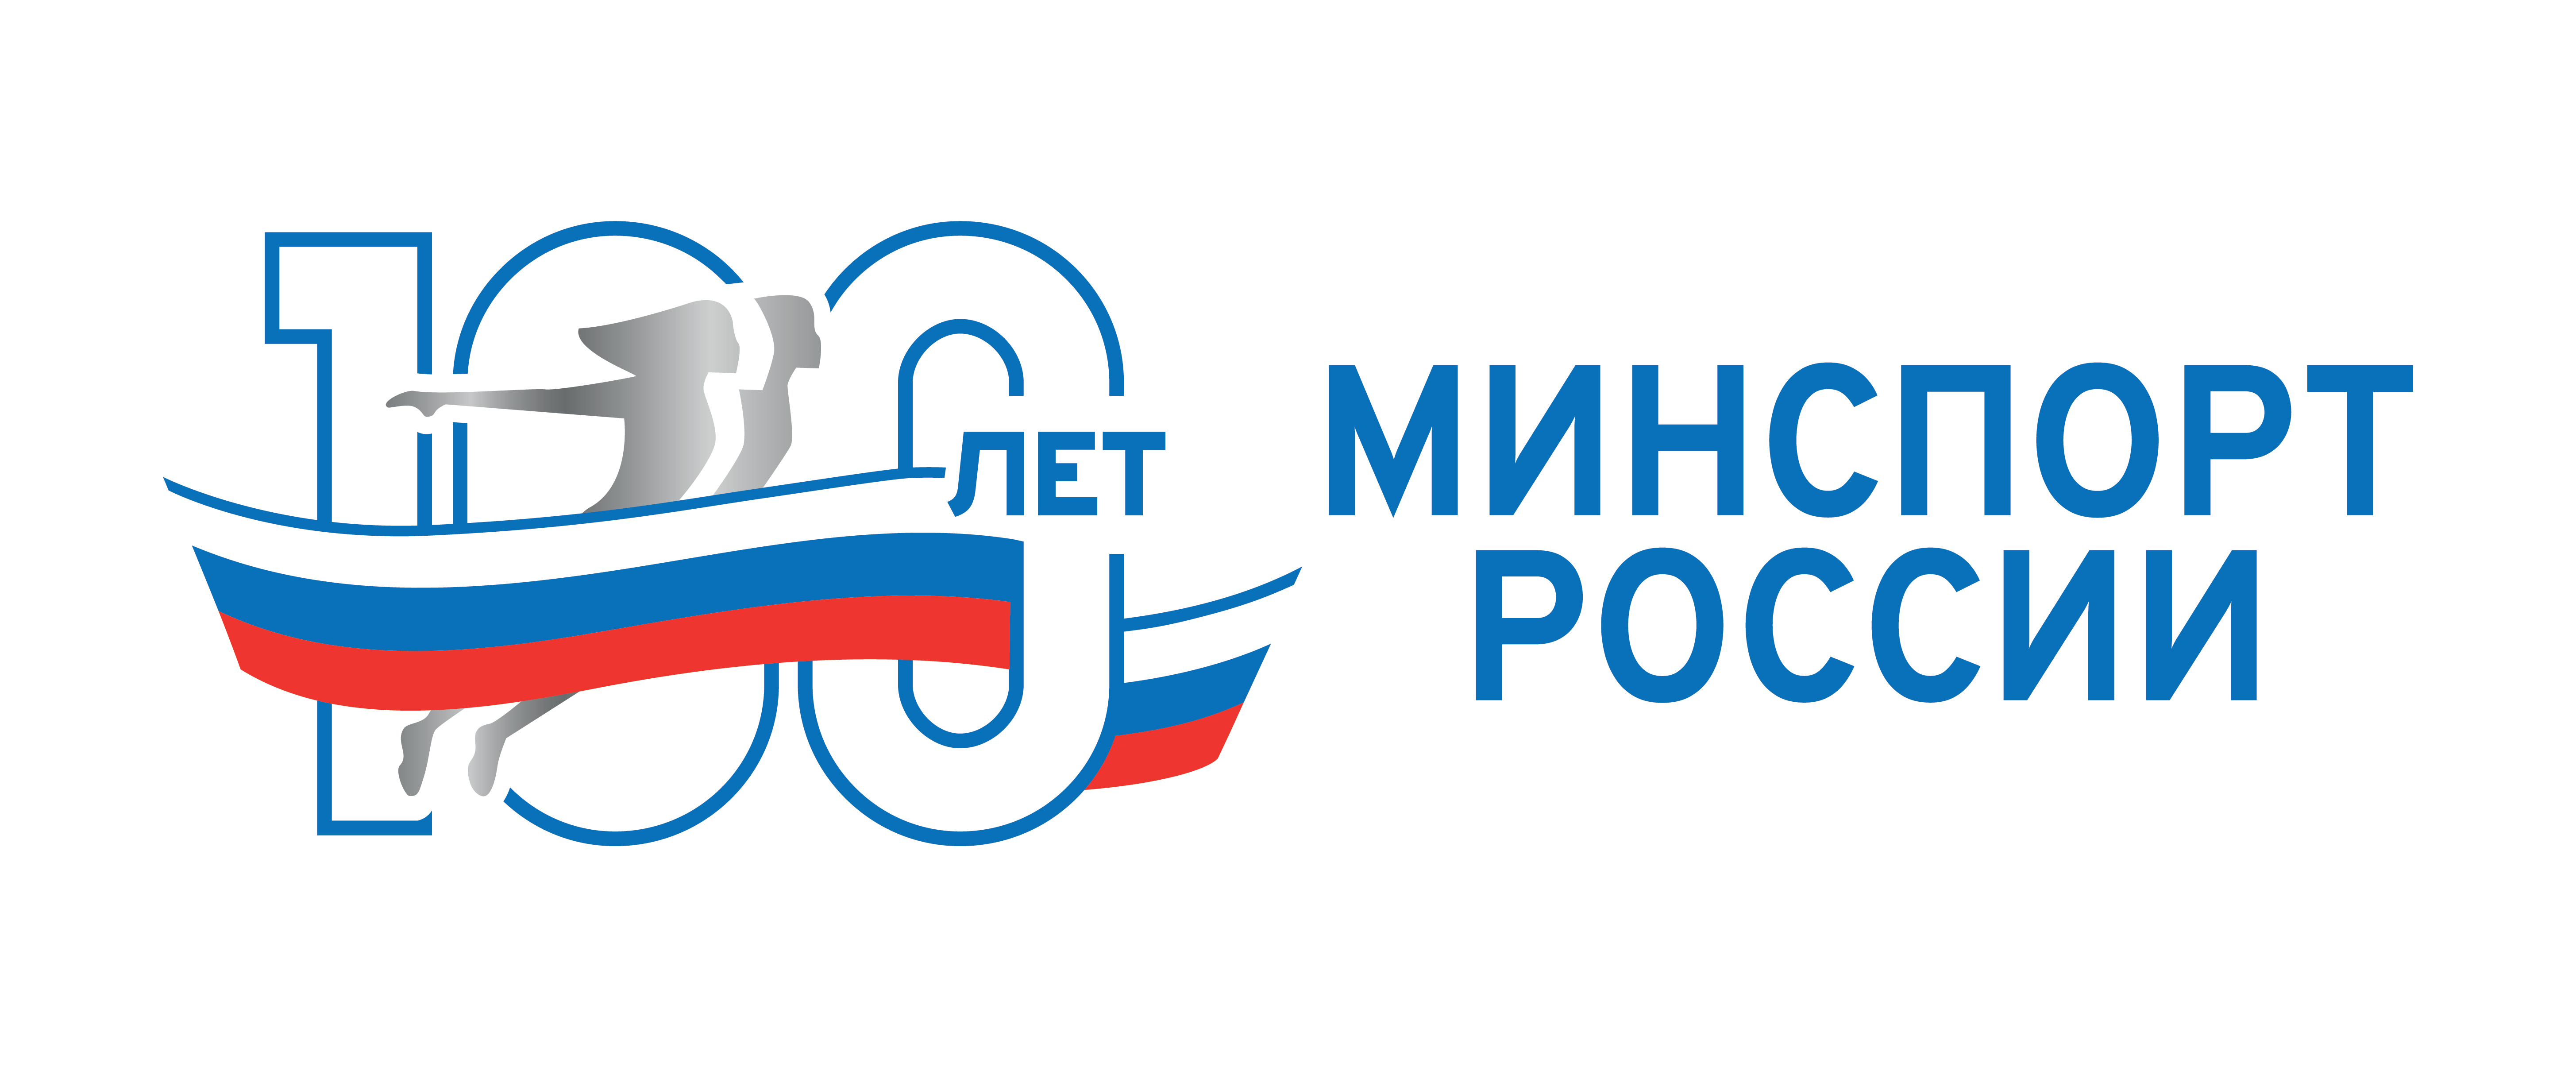 В 2023 году отмечается 100-летие Министерства спорта Российской Федерации как государственного органа управления в сфере физической культуры и спорта.